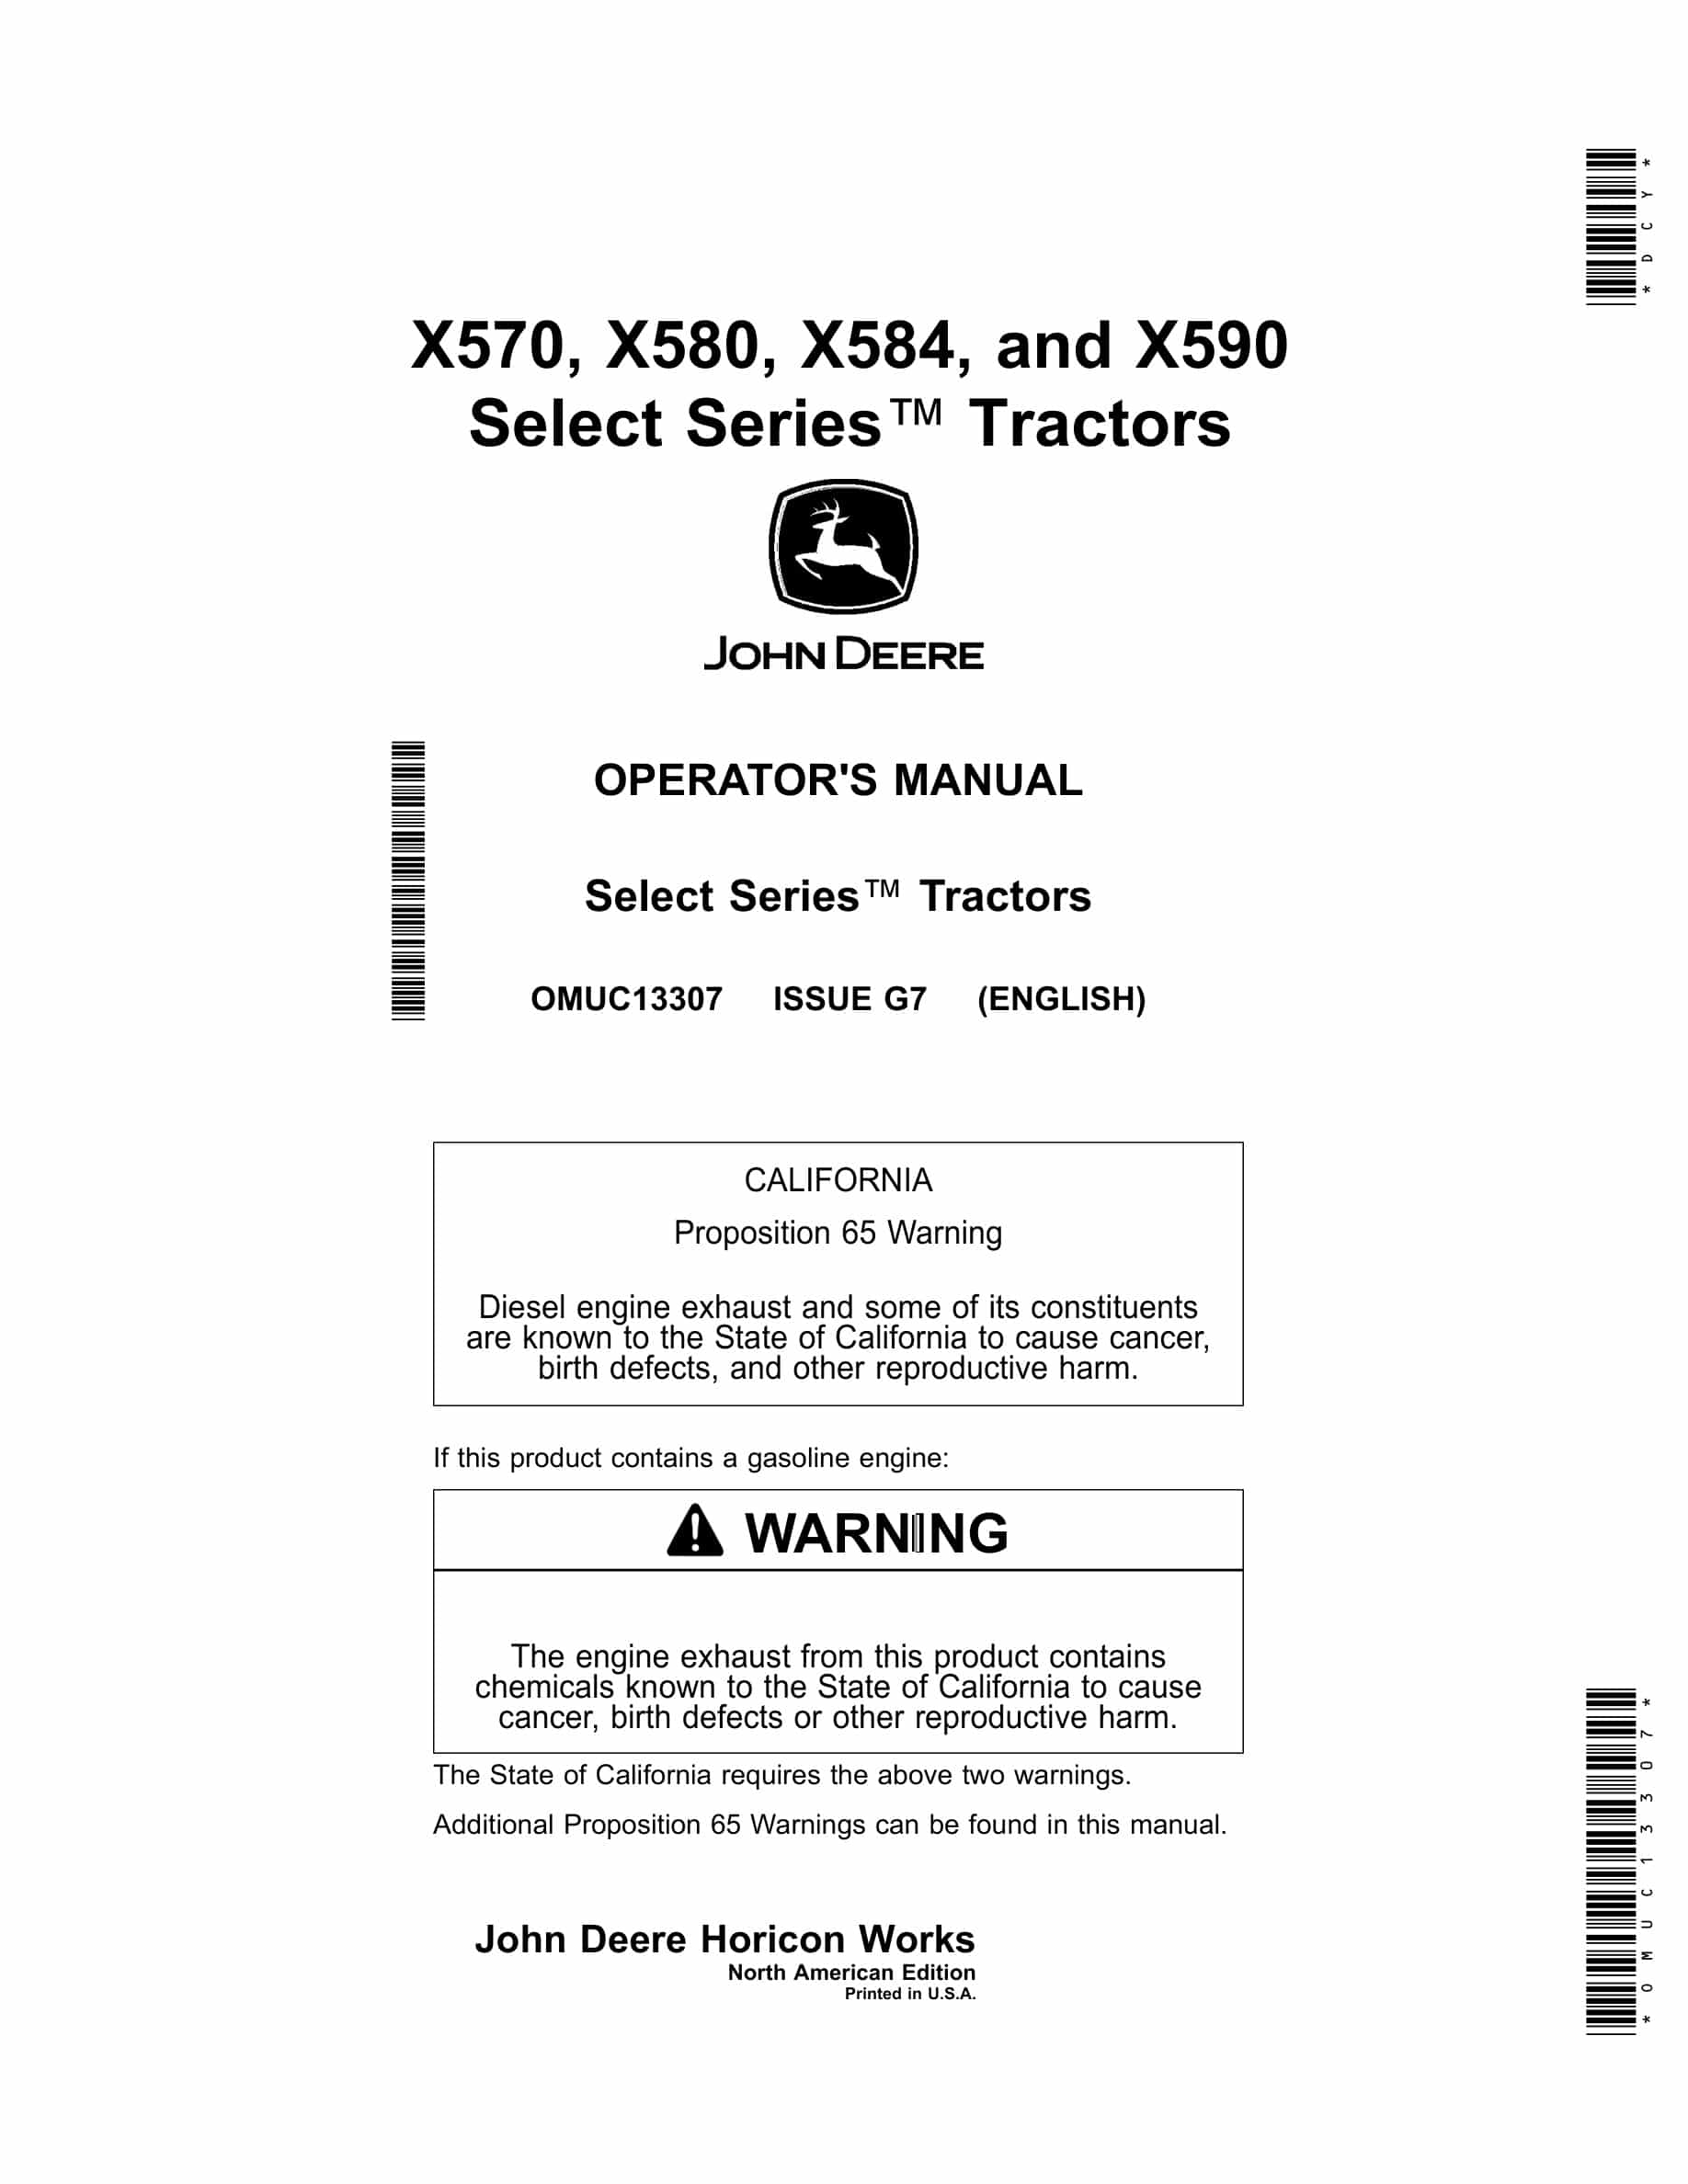 John Deere X570, X580, X584, and X590 Tractor Operator Manual OMUC13307-1